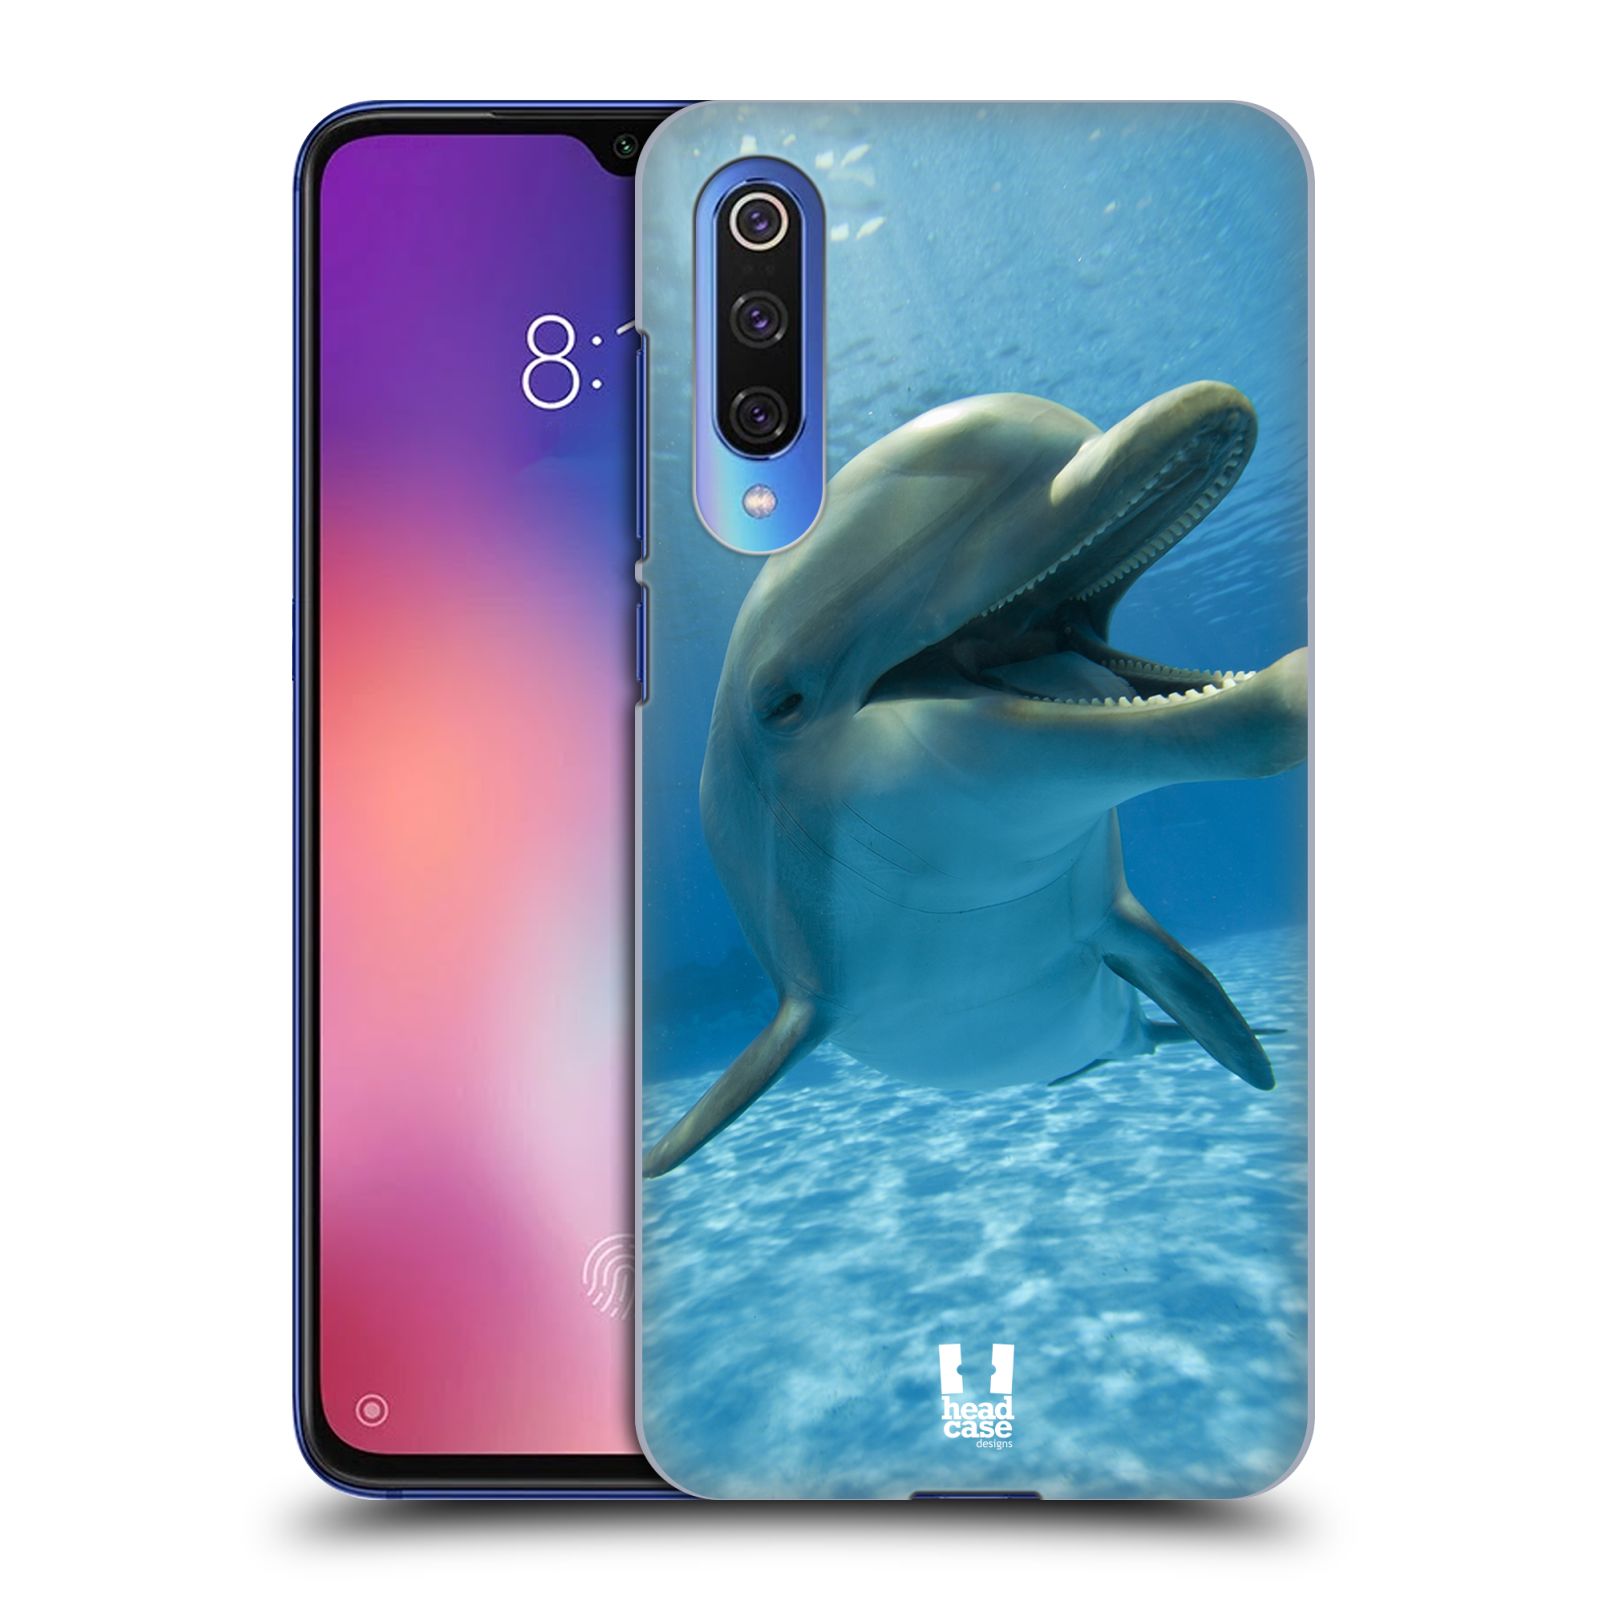 Zadní obal pro mobil Xiaomi Mi 9 SE - HEAD CASE - Svět zvířat delfín v moři